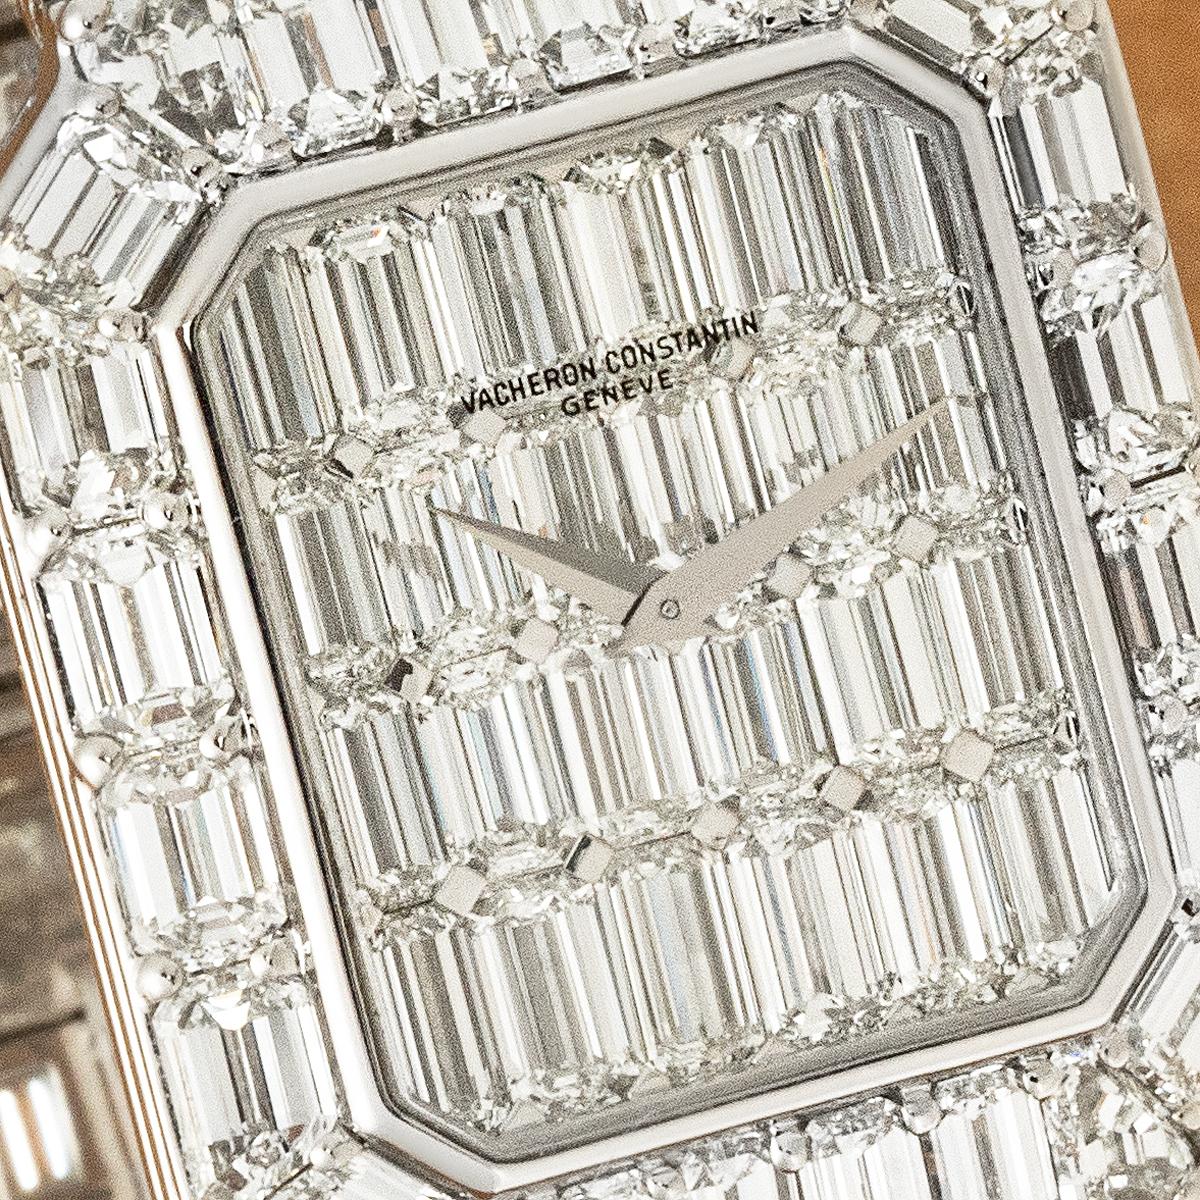 Emerald Cut Vacheron Constantin Kalla Pagode White Gold Diamond Set 35516/986G-7